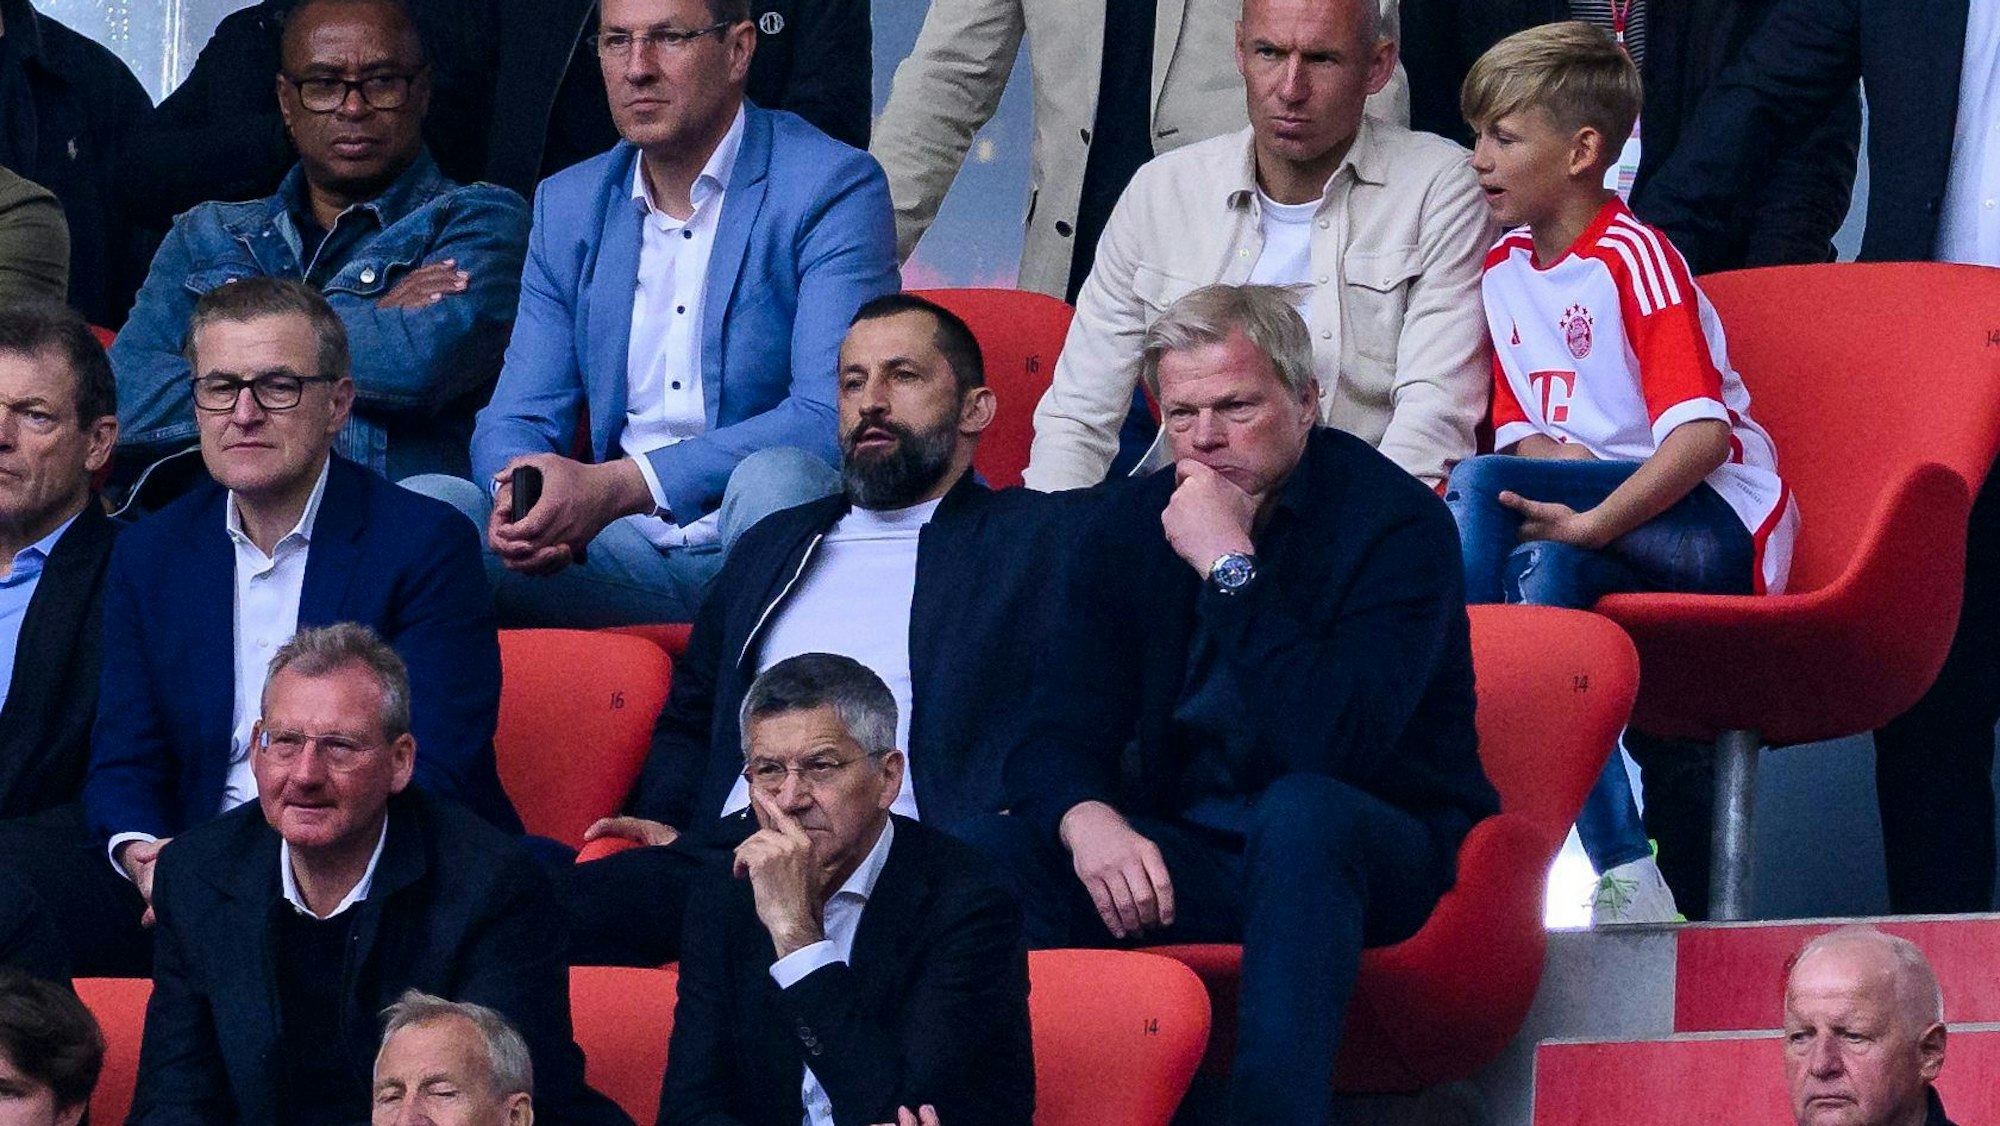 Münchens Sportvorstand Hasan Salihamidzic (M) und Münchens Vorstandsvorsitzender Oliver Kahn (r) sitzen auf der Tribüne. Links sitzt Finanzvorstand Jan-Christian Dreesen, der angeblich Kandidat für die Kahn-Nachfolge sein soll.